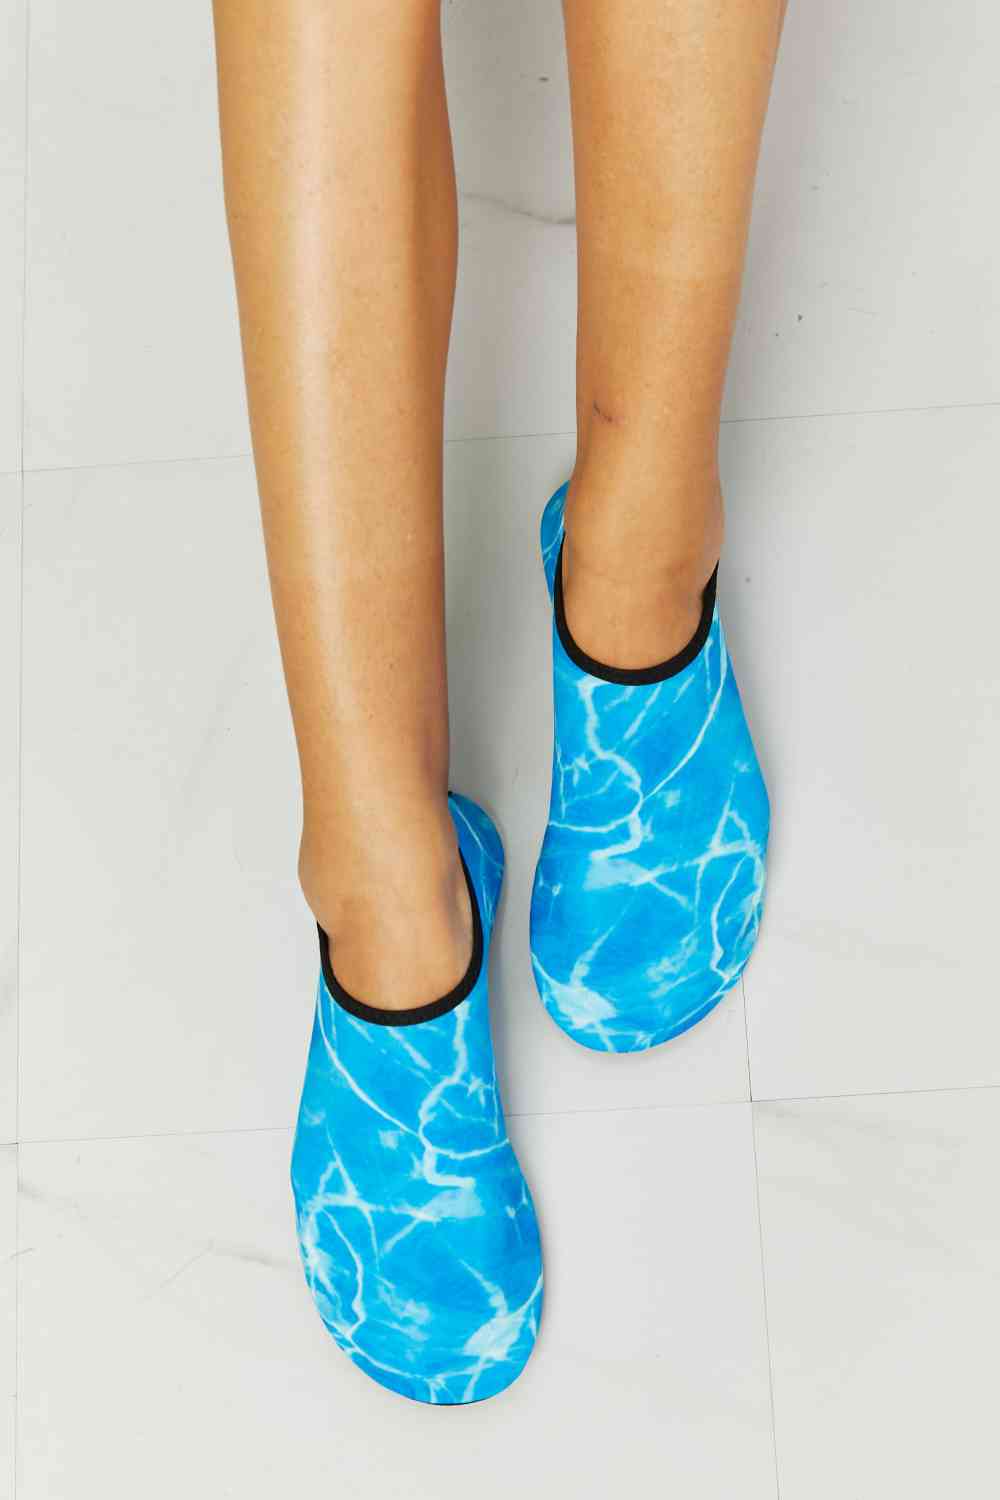 Chaussures aquatiques MMshoes On The Shore en bleu ciel